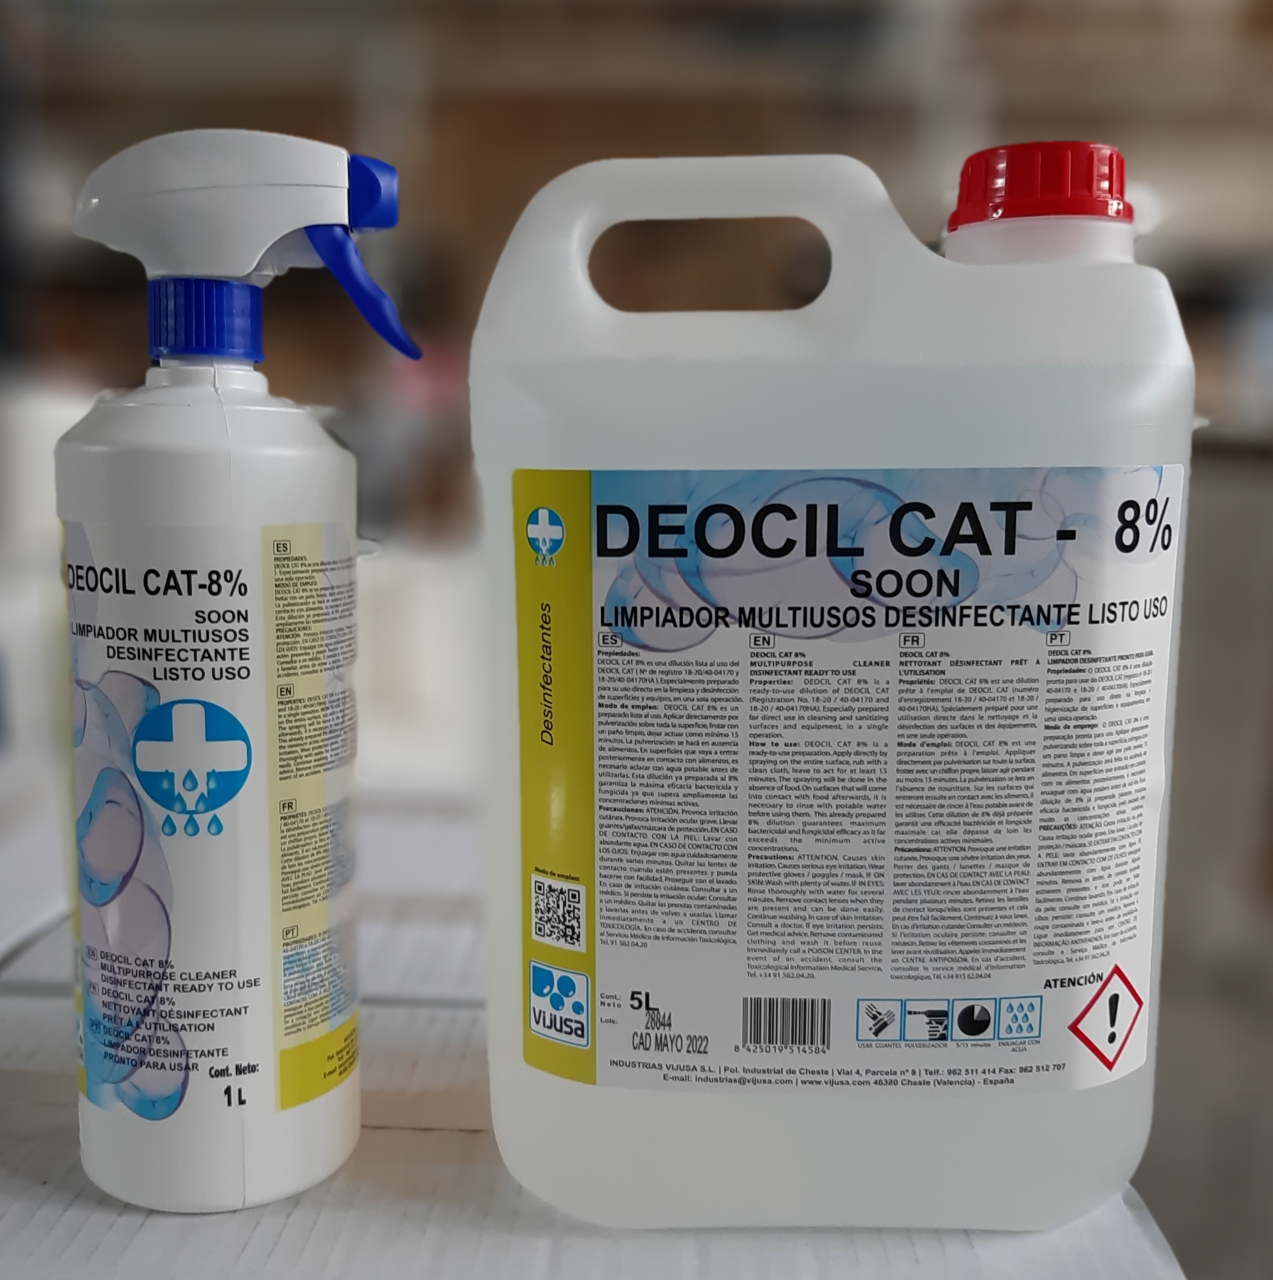 Deciol cat 8- soon limpiador multiusos desinfectante listo uso(virucida,bactericida,fungicida)